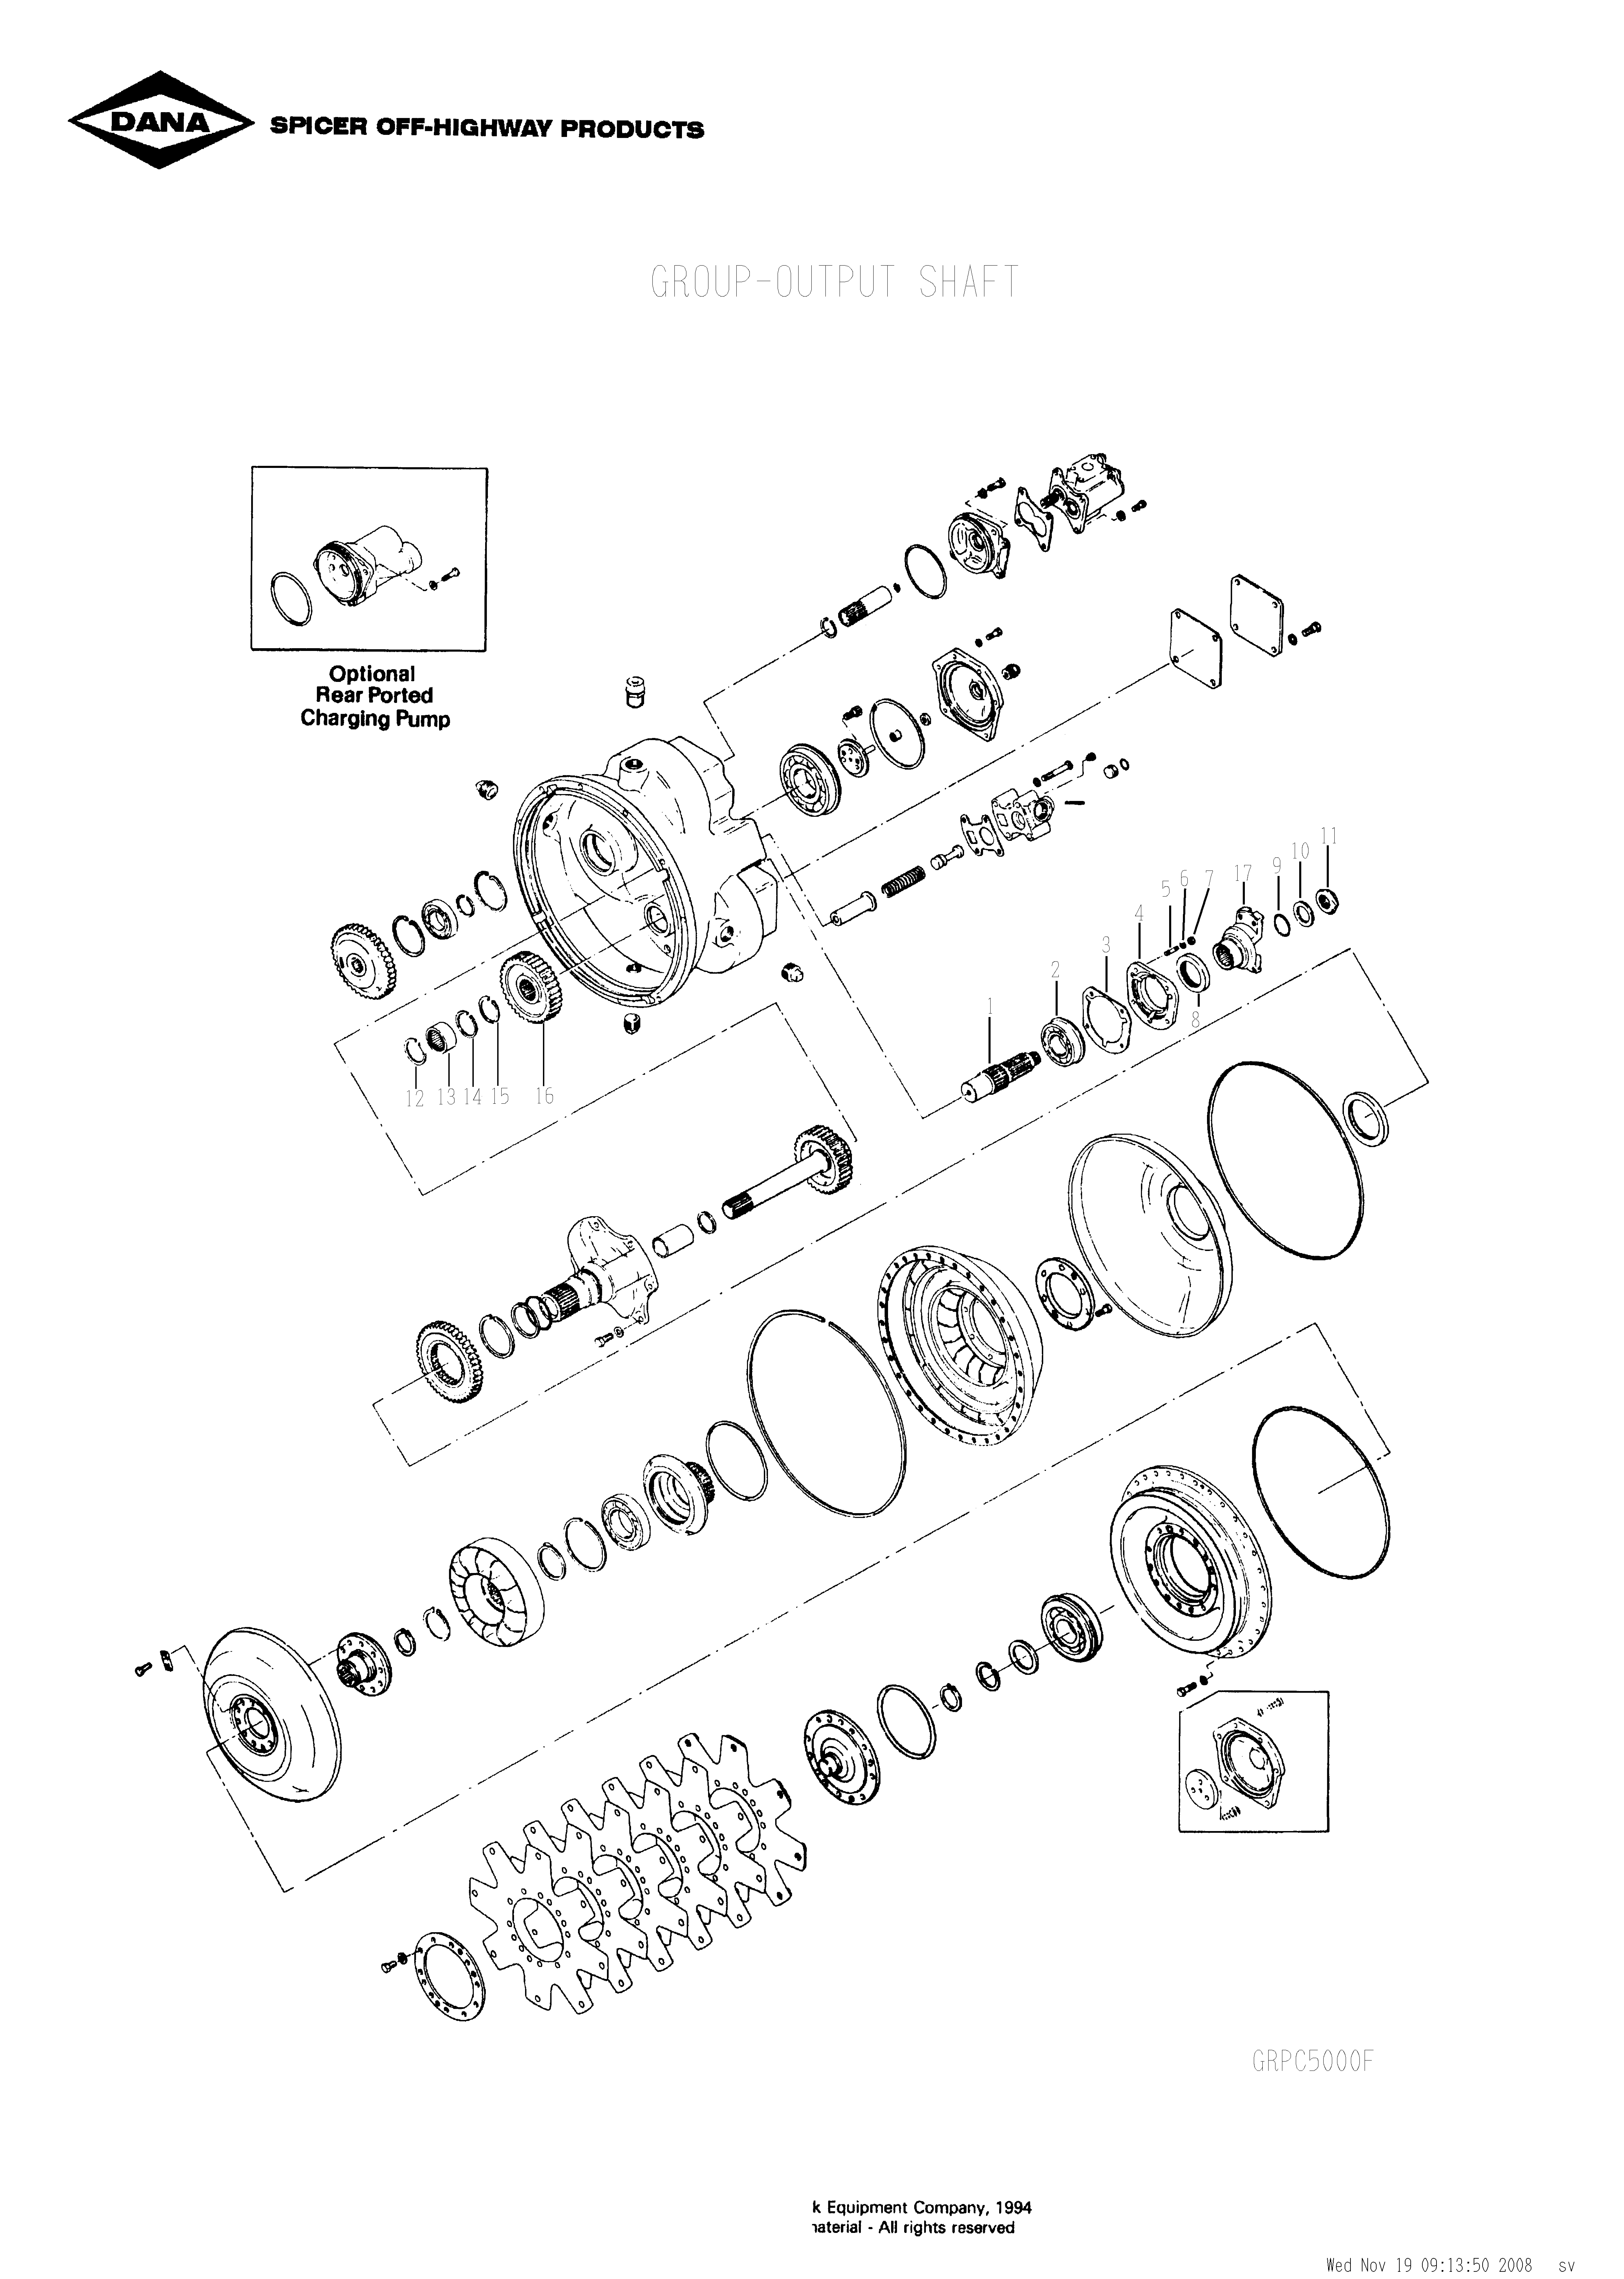 drawing for SCHOEMA, SCHOETTLER MASCHINENFABRIK K24.000102 - O-RING (figure 1)